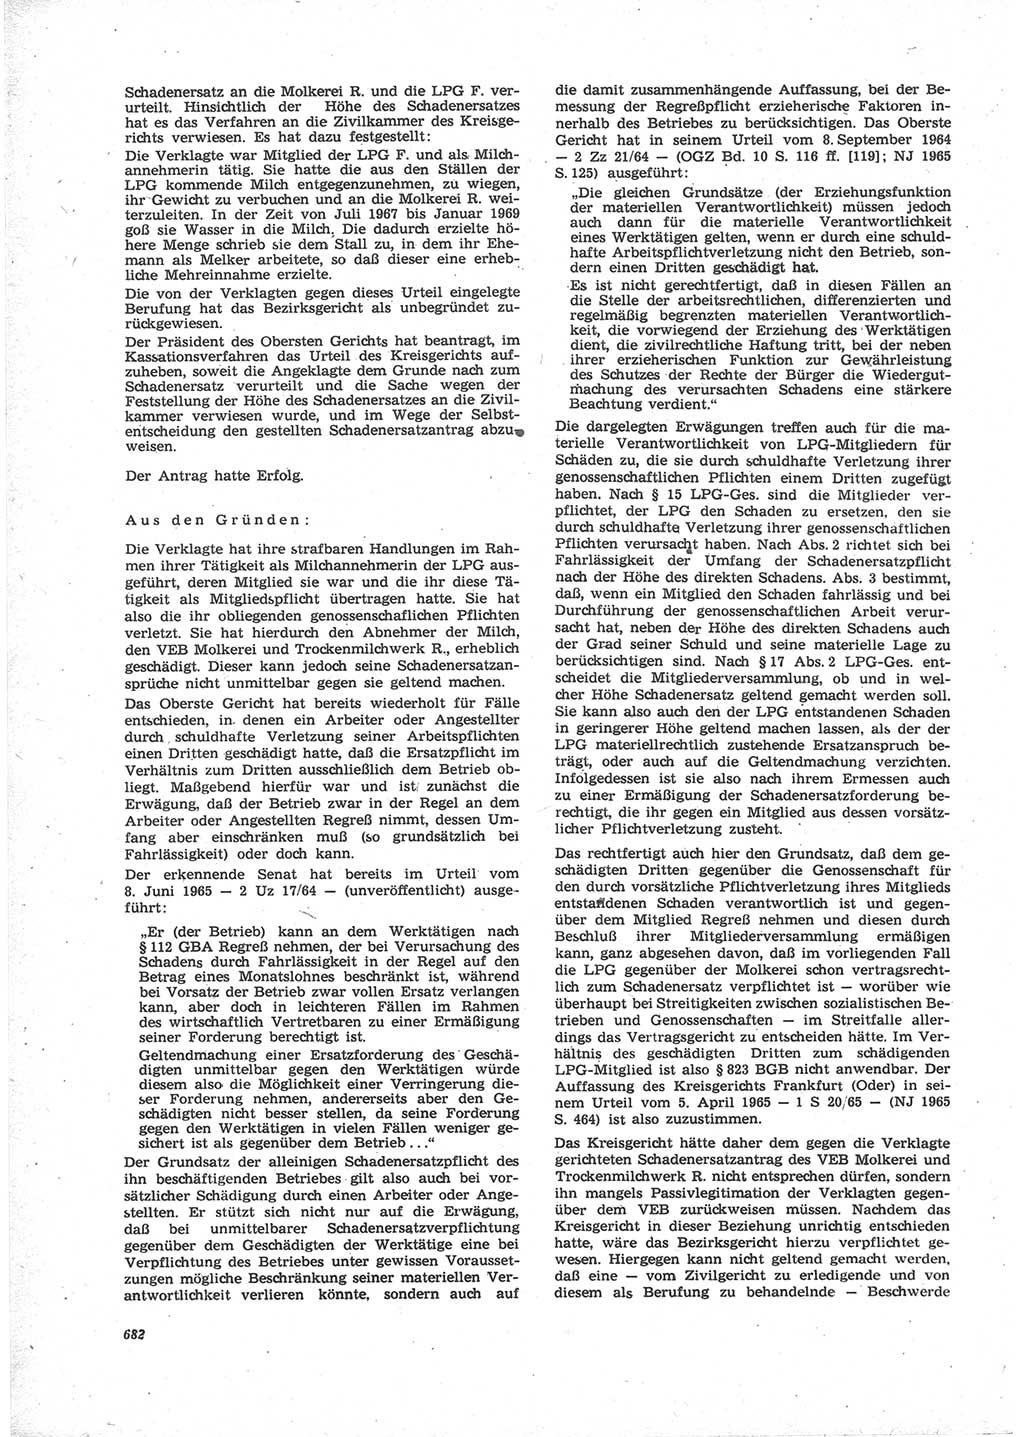 Neue Justiz (NJ), Zeitschrift für Recht und Rechtswissenschaft [Deutsche Demokratische Republik (DDR)], 24. Jahrgang 1970, Seite 682 (NJ DDR 1970, S. 682)